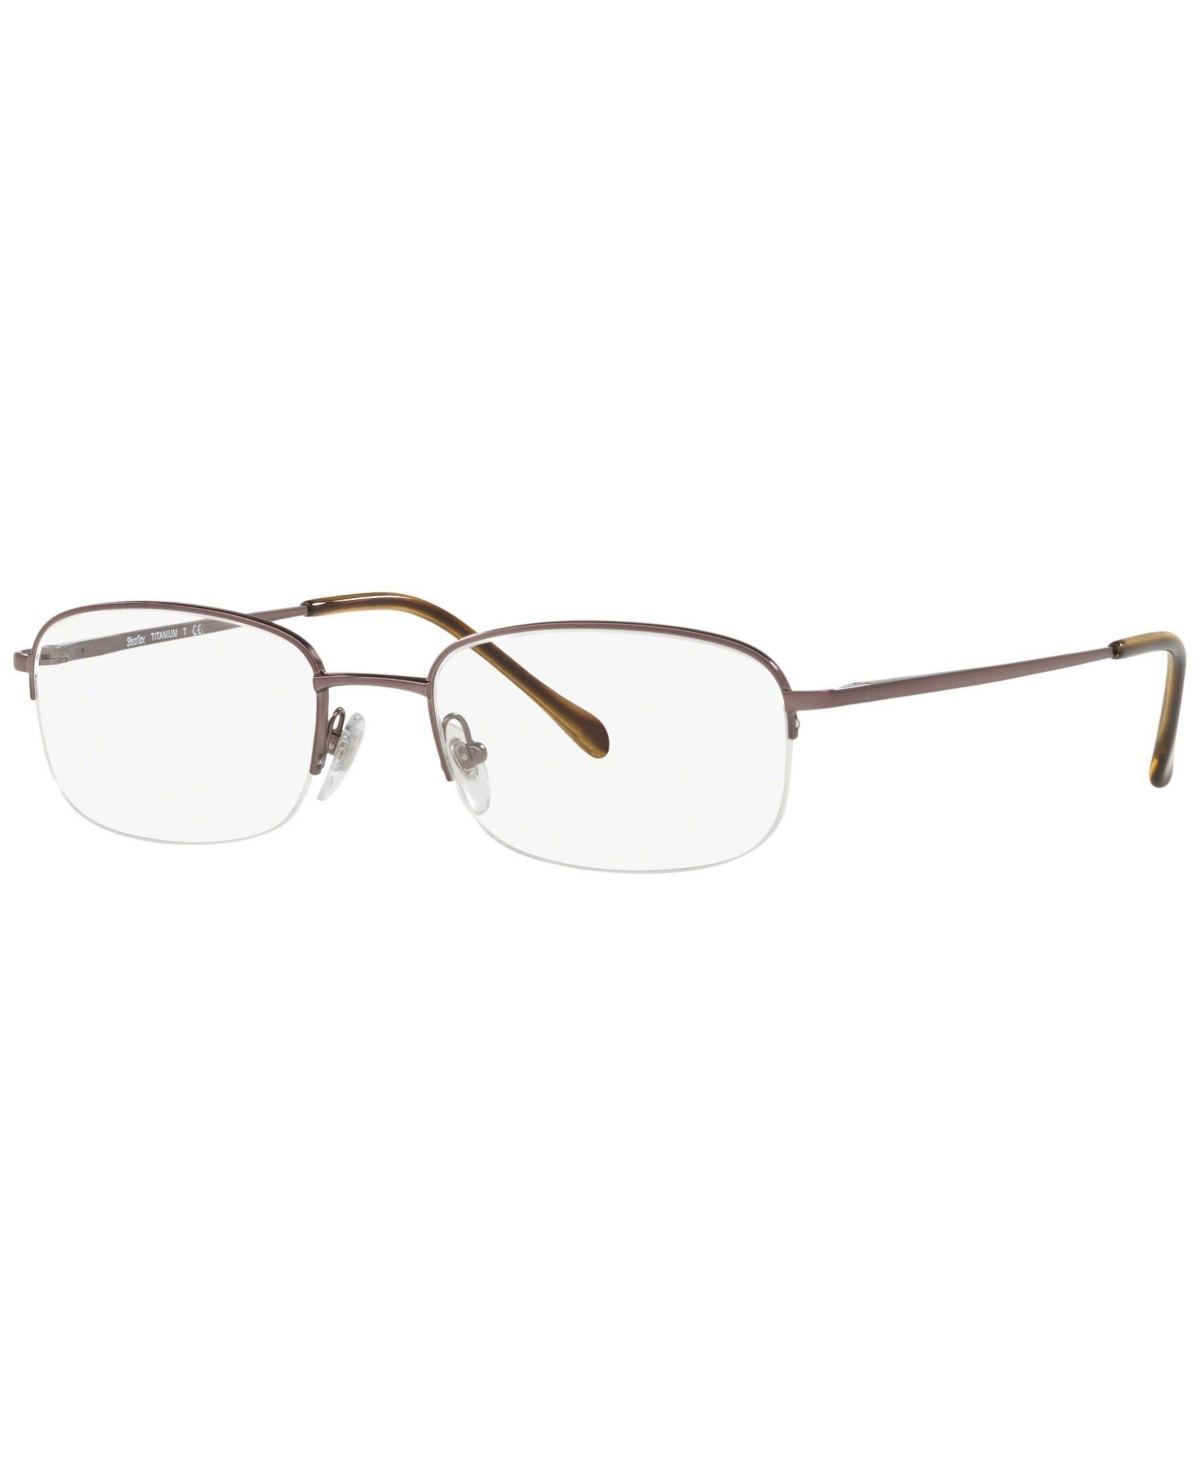 SF4032T Men's Oval Eyeglasses - Brown